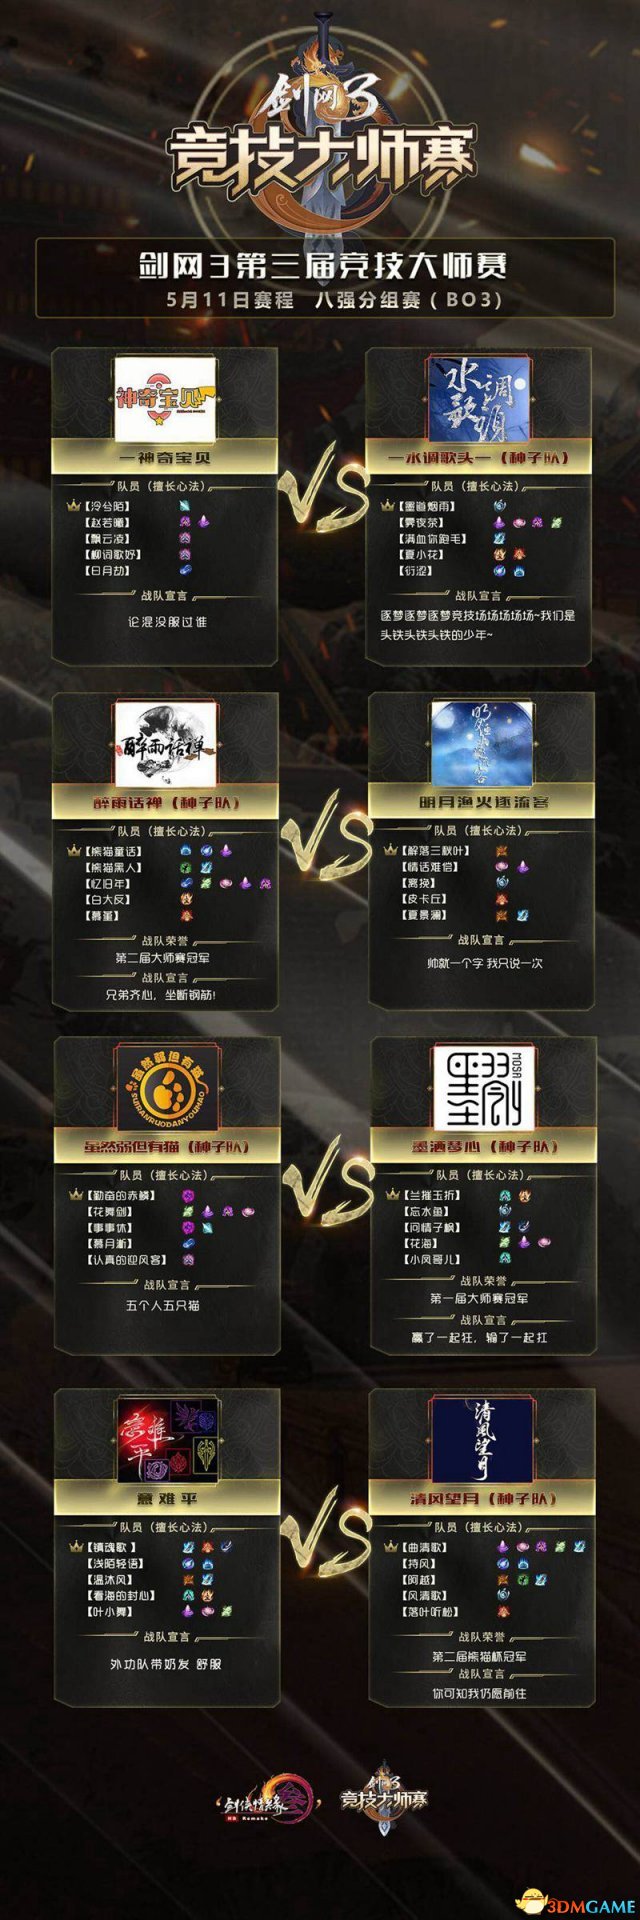 剑鸣九州 《剑网3》大师赛上海总决赛今日15点开战